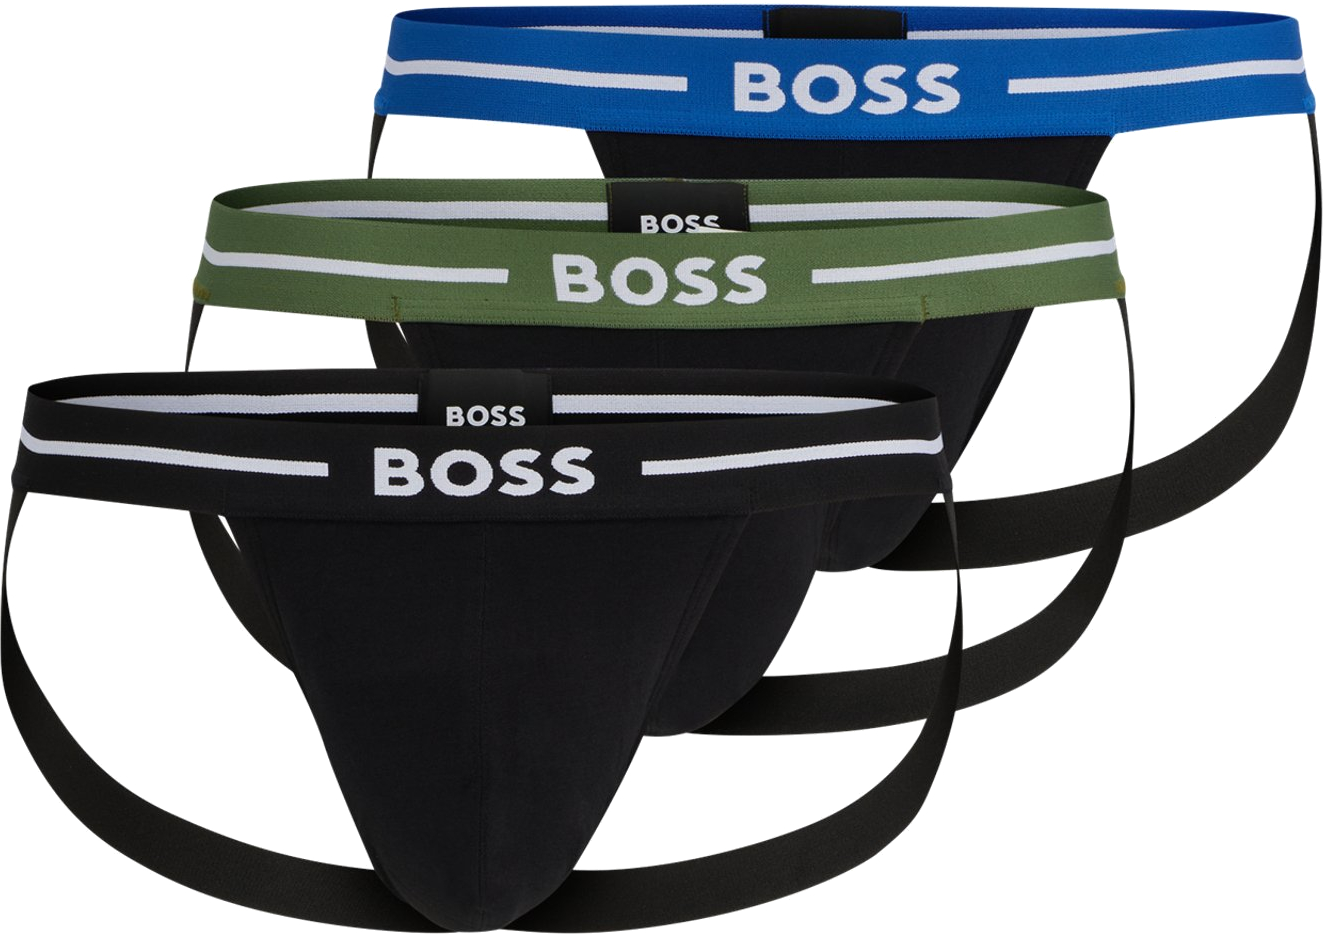 Hugo Boss 3 PACK - pánské slipy BOSS JOCK STRAP 50514965-965 L